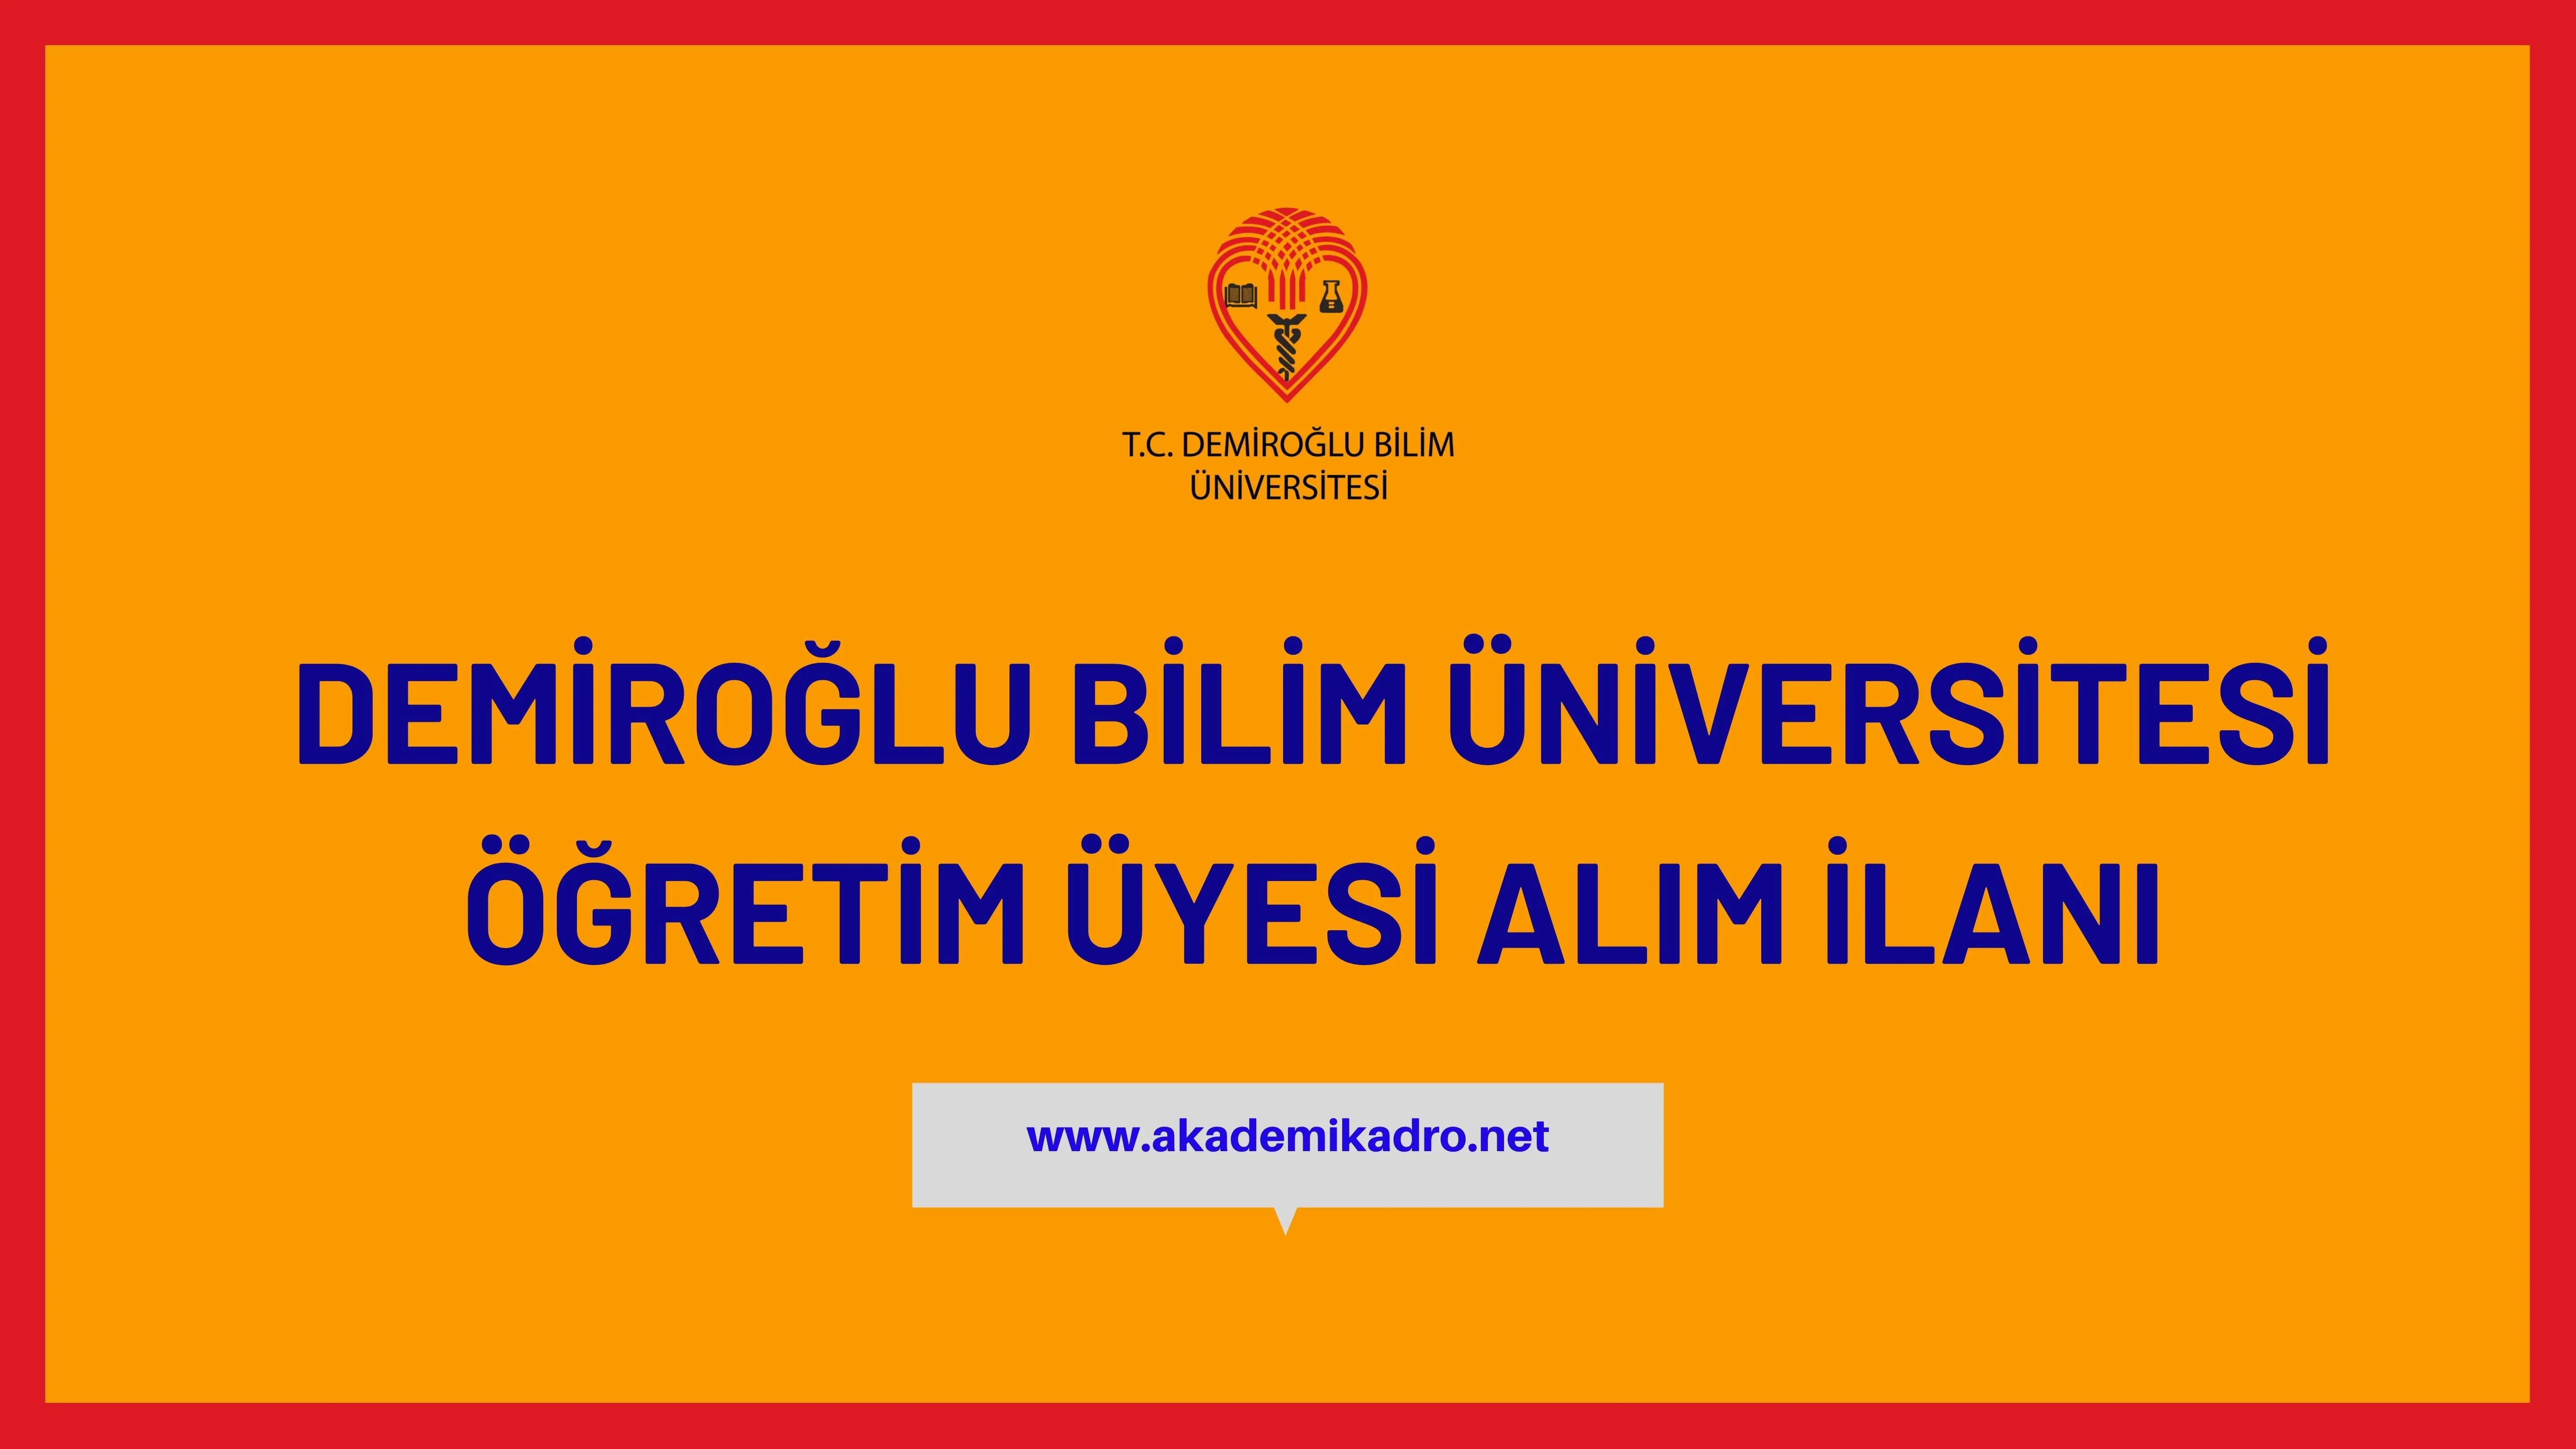 Demiroğlu Bilim Üniversitesi çeşitli alanlarda 6 Öğretim üyesi alacak. Son başvuru tarihi 25 Kasım 2022.